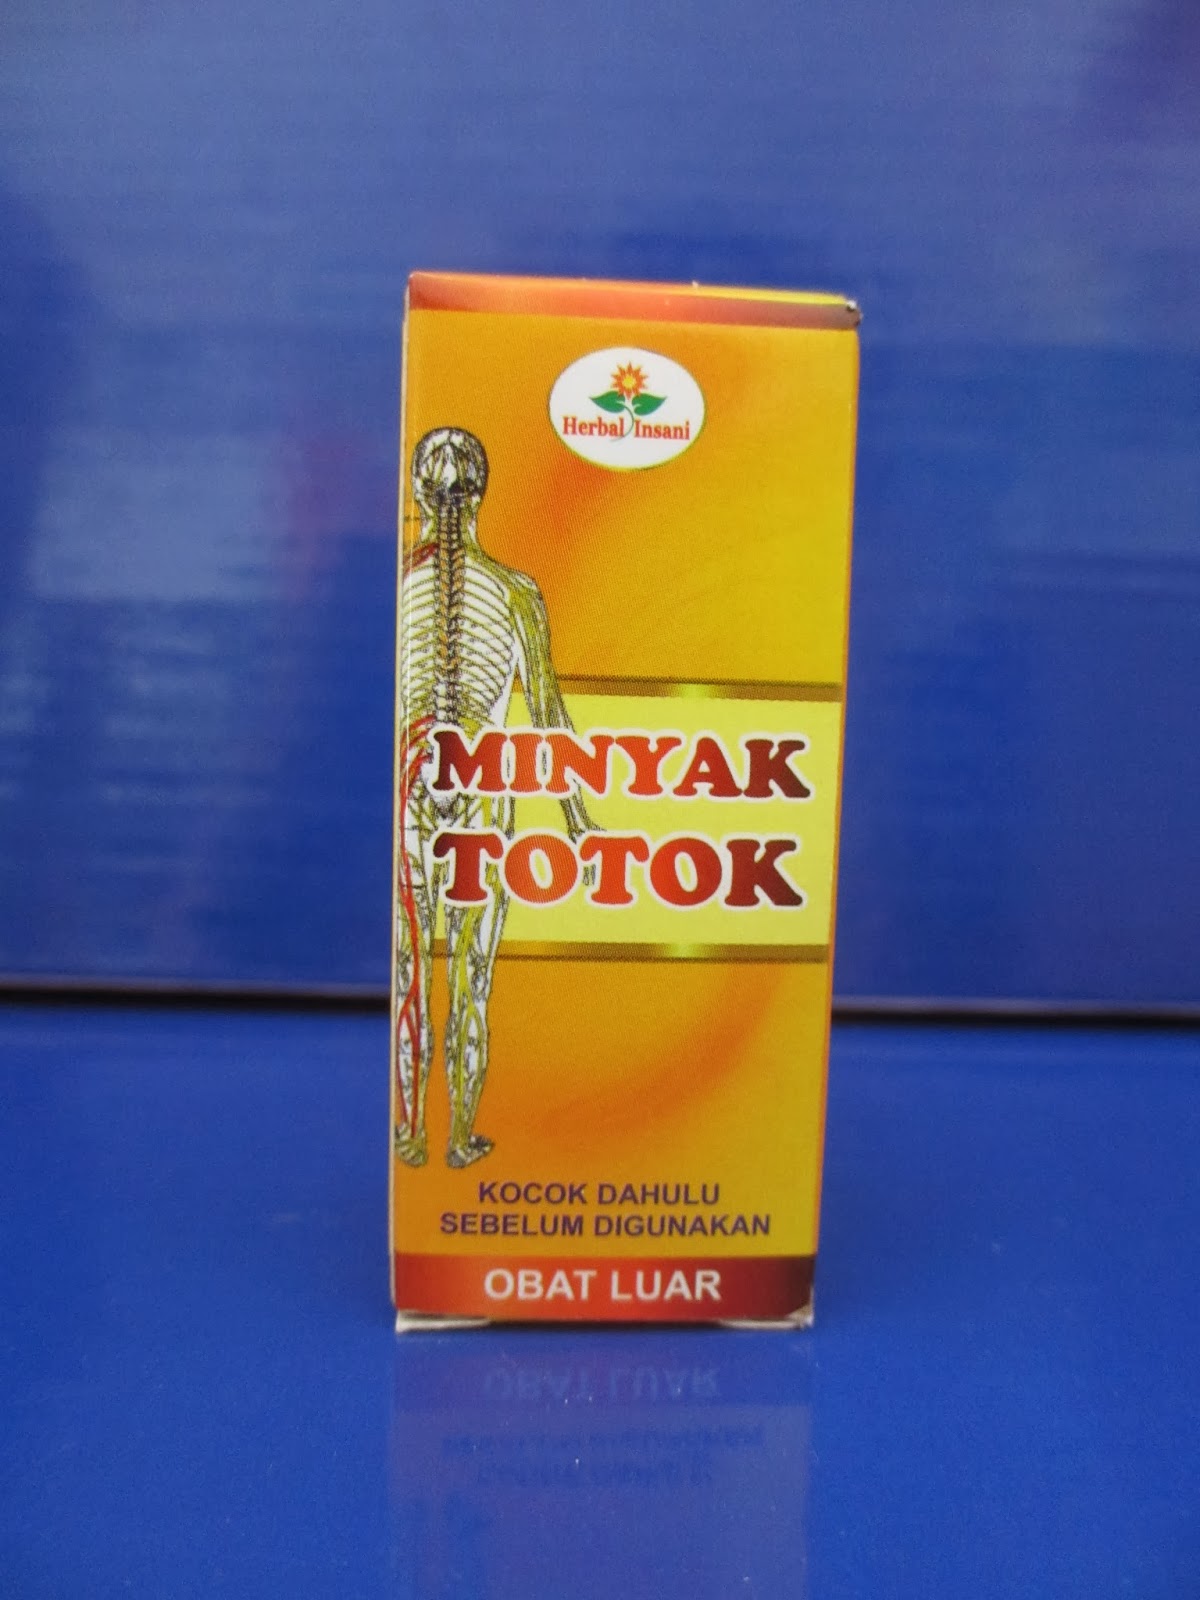 JUAL MINYAK TOTOK MURAH | AGEN - Jual obat herbal murah di ...